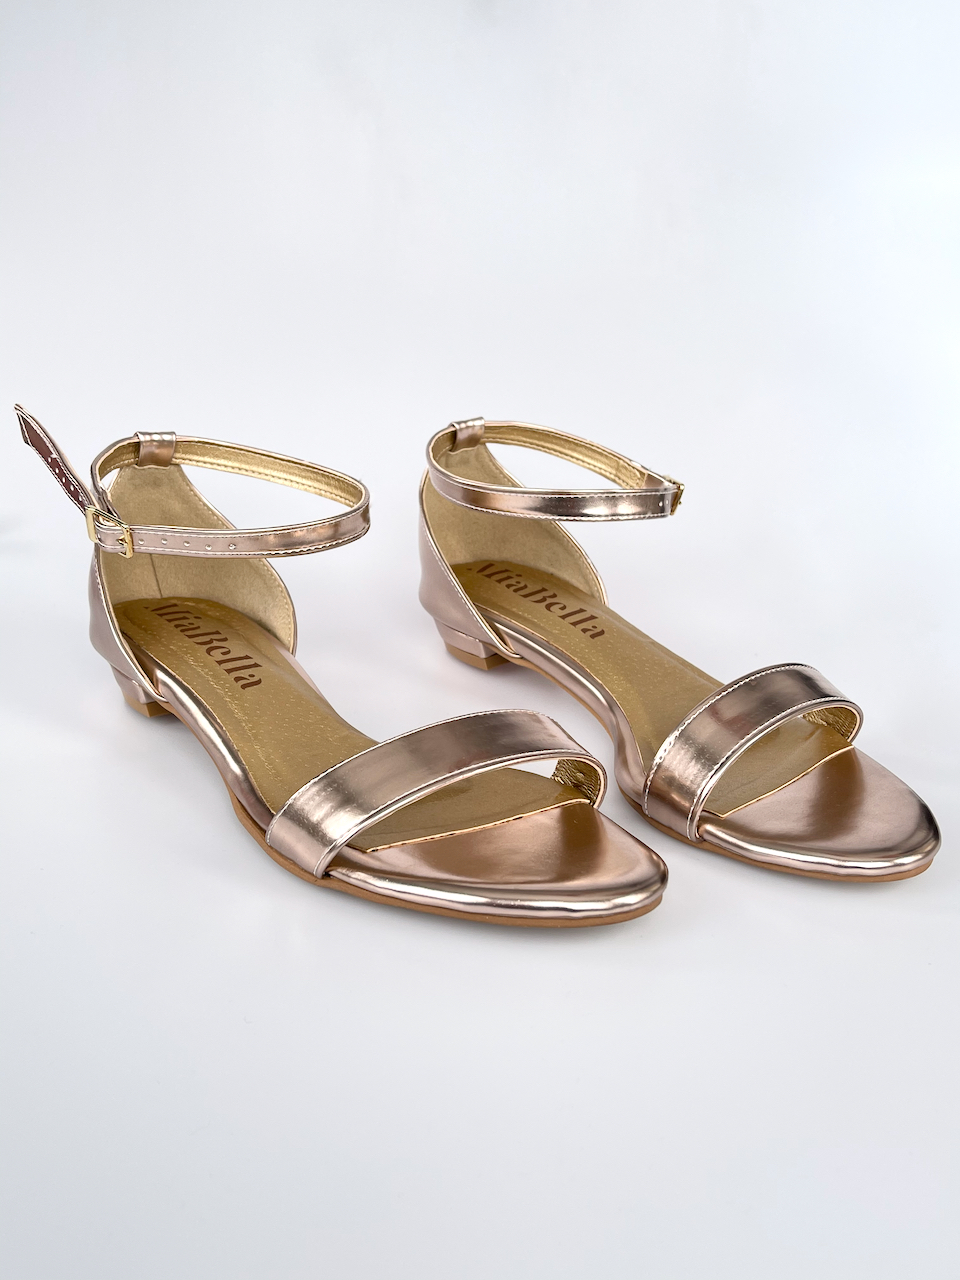 Rose-gold sandálky bez podpatků 40,5 - stélka 27,5cm / obvod 23,5cm